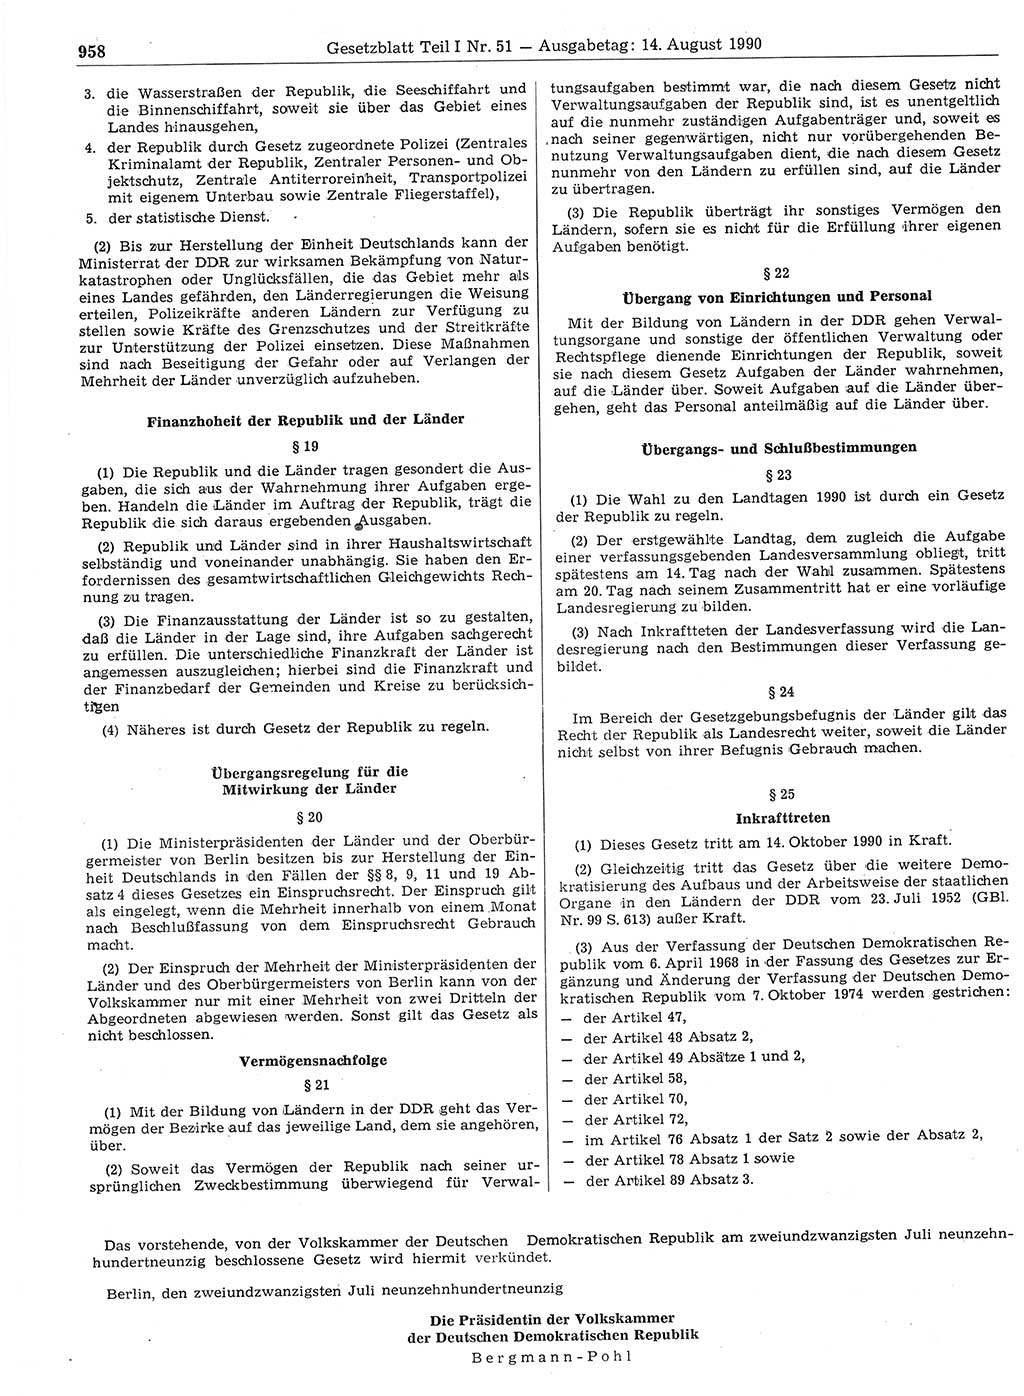 Gesetzblatt (GBl.) der Deutschen Demokratischen Republik (DDR) Teil Ⅰ 1990, Seite 958 (GBl. DDR Ⅰ 1990, S. 958)